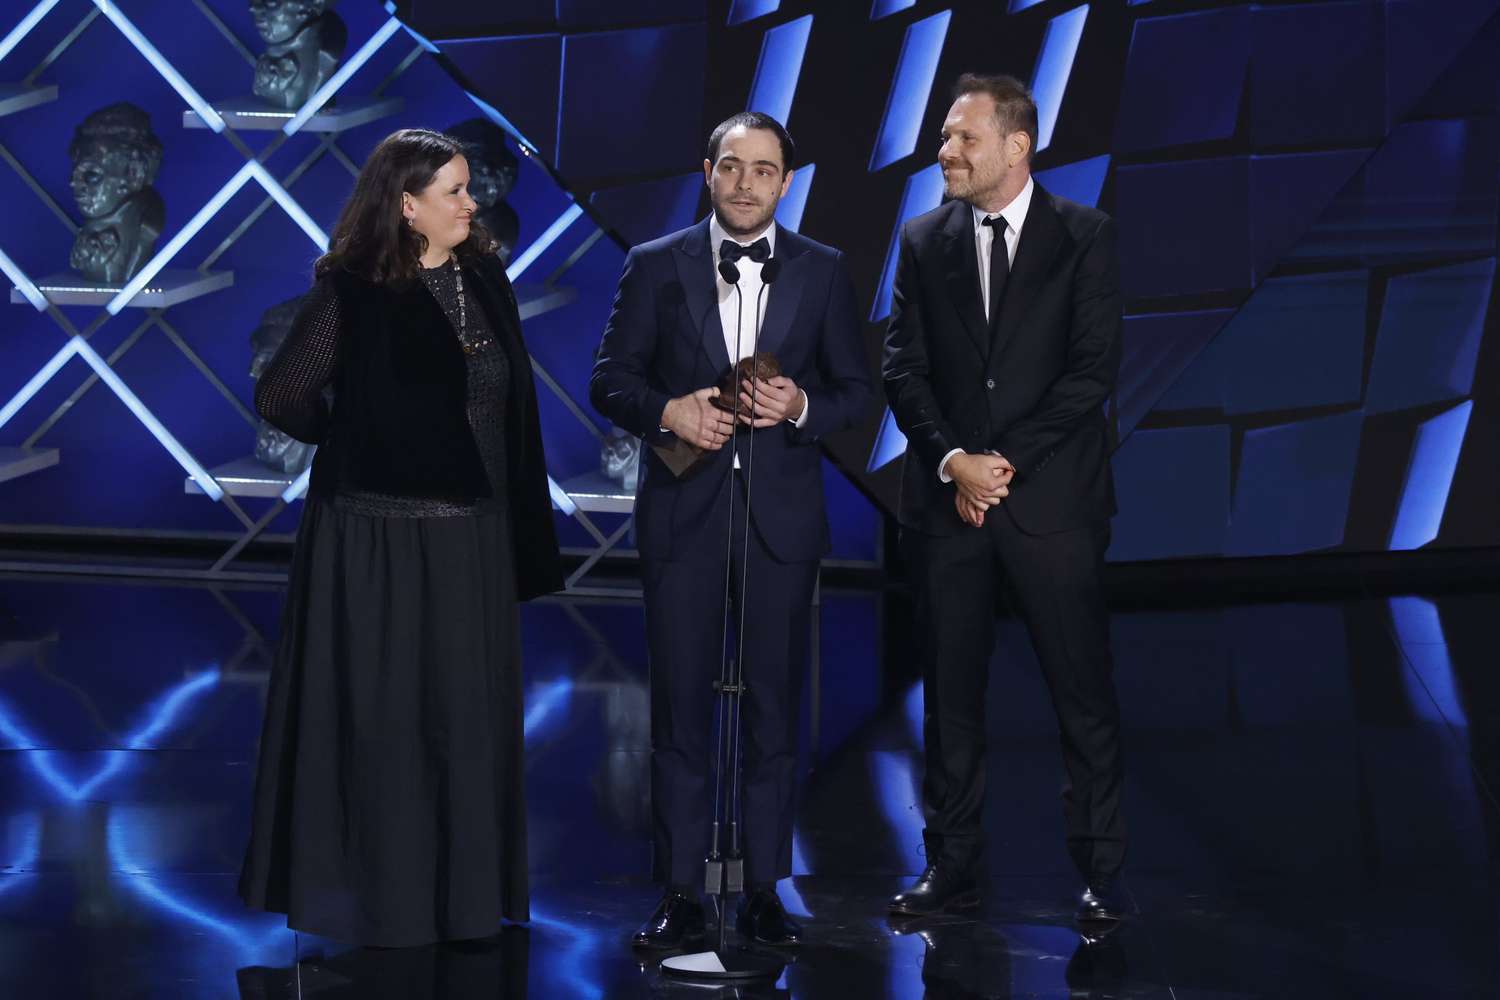 Peter Lanzani y el productor Federico Posternak recibieron el Premio Goya 2023 a la Mejor película iberoamericana por "Argentina 1985".